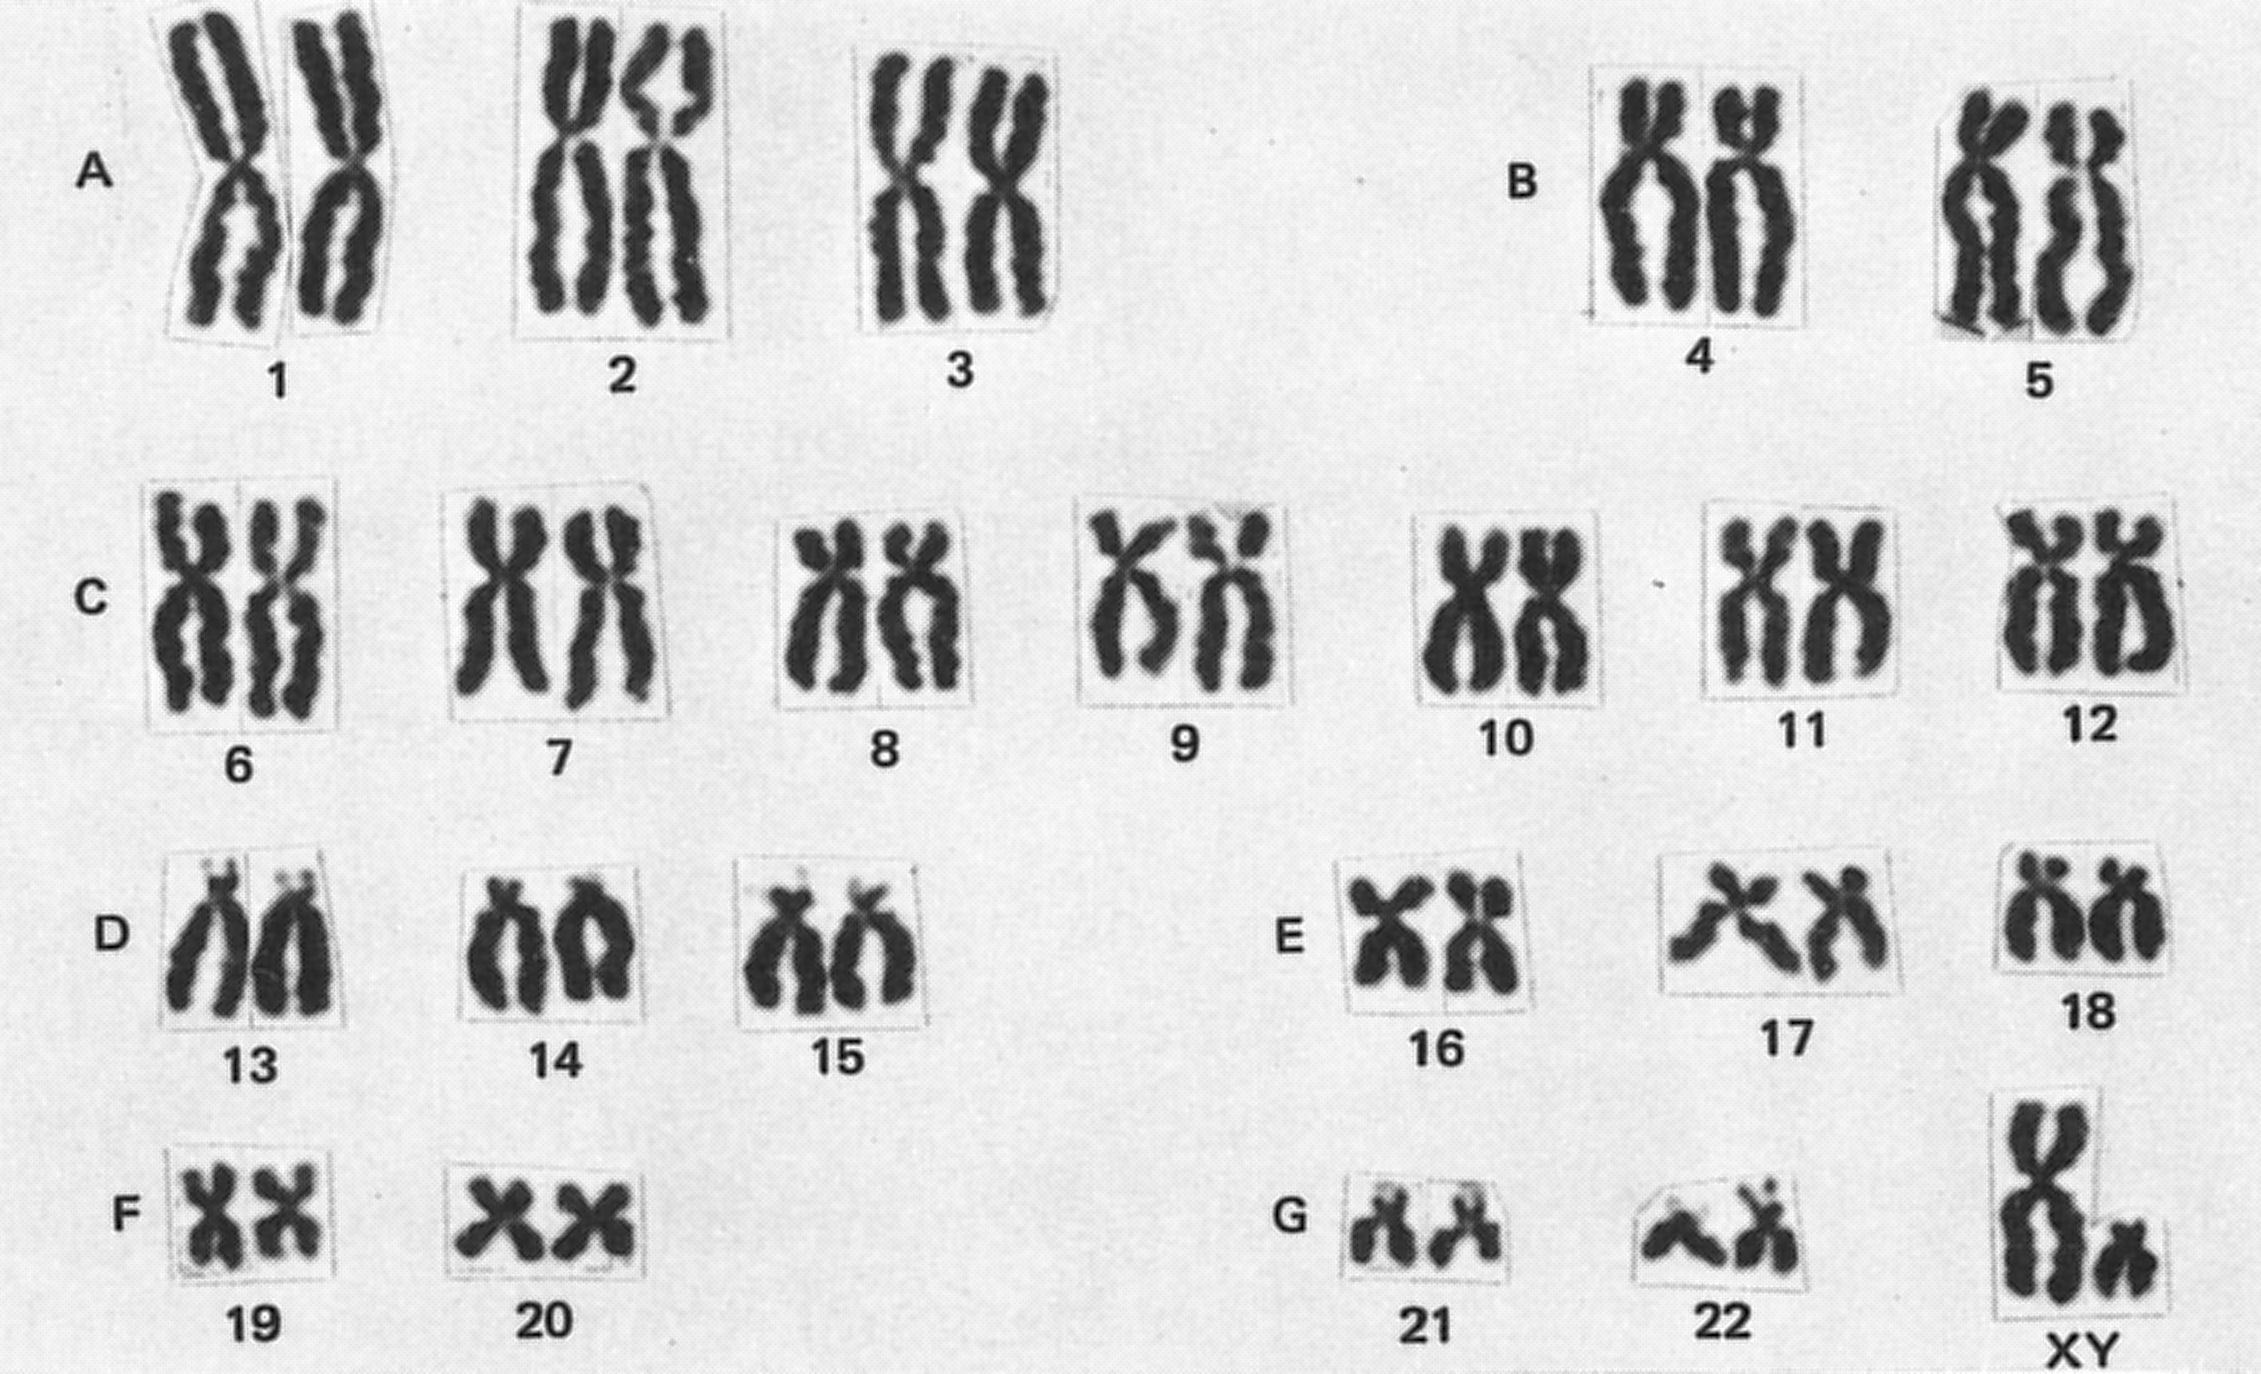 23 хромосомы у человека в клетках. Кариотип человека хромосомы. Нормальный кариотип человека 46 хромосом. Кариотип человека классификация хромосом человека. Кариотип набор хромосом.